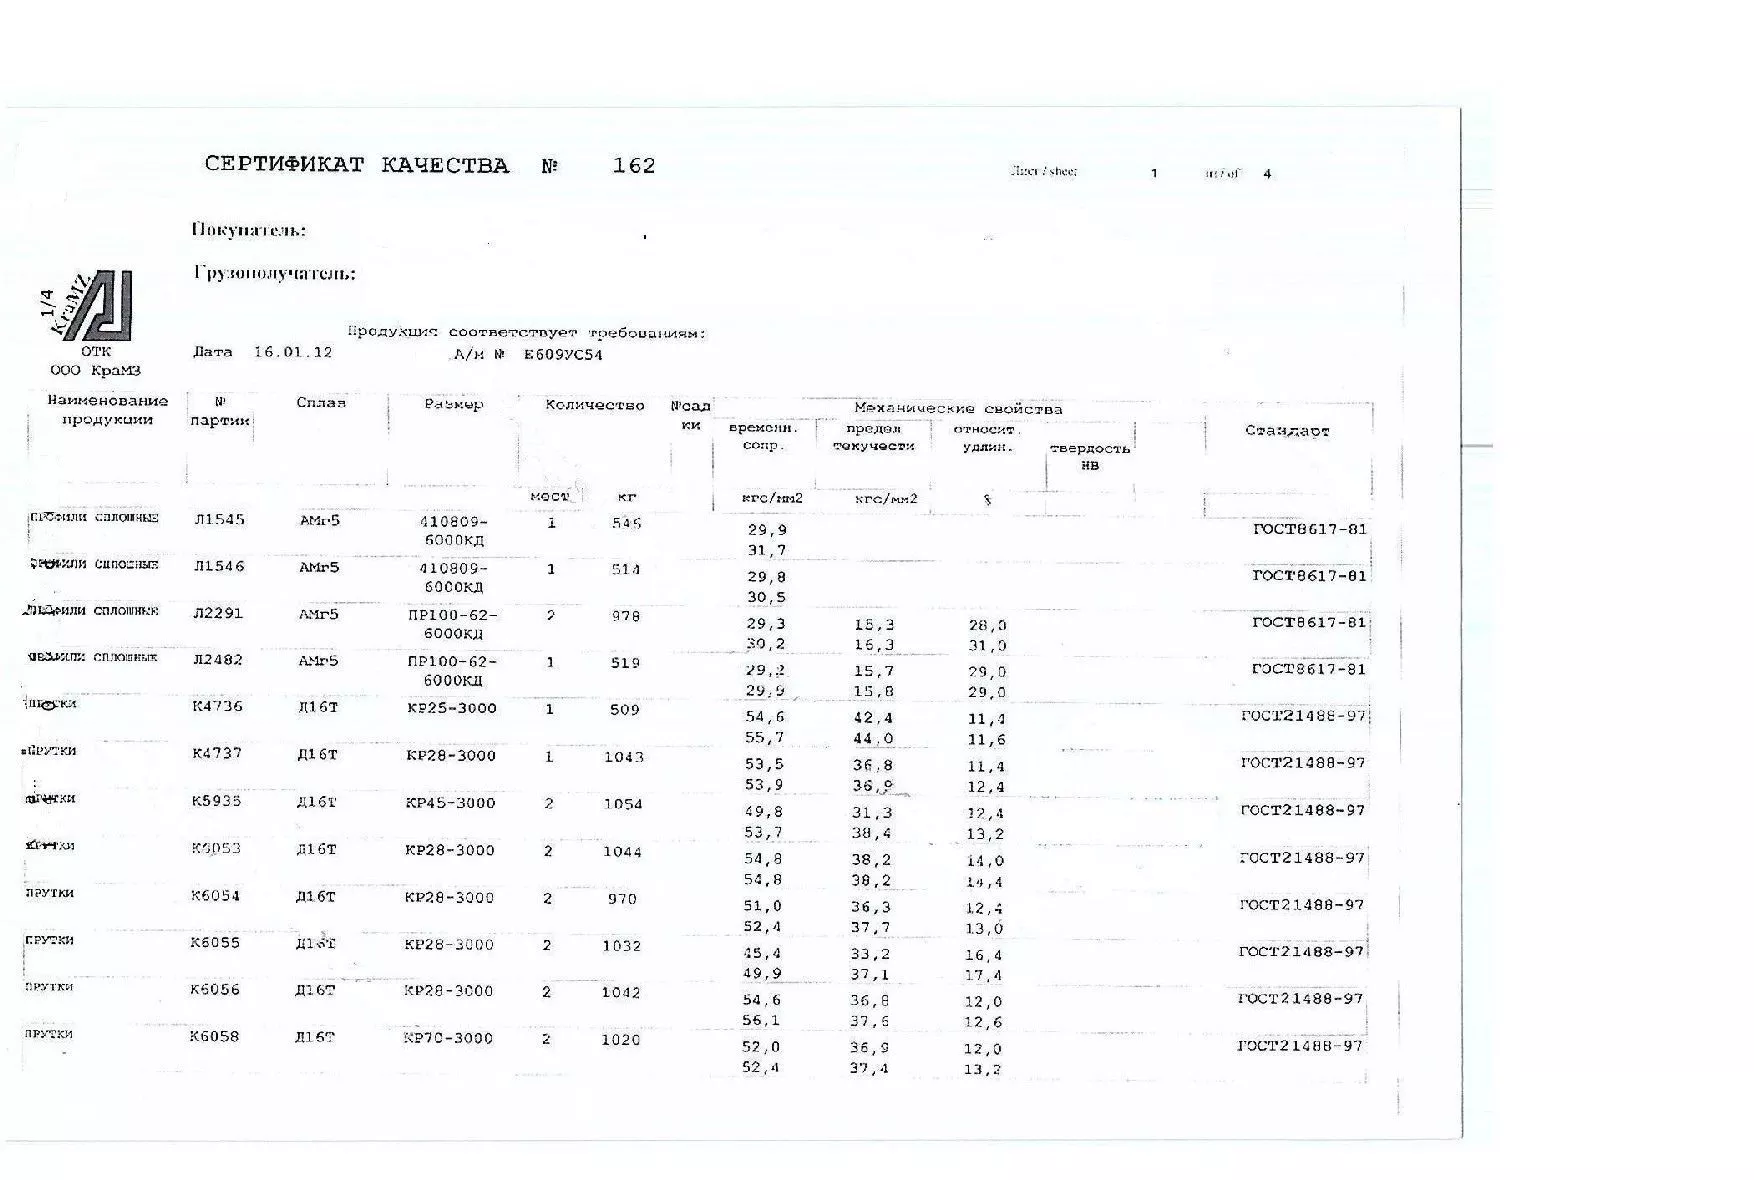 Сертификат на прутки и трубы алюминиевые Д16т и Амг5м от 16.01 (1.1)